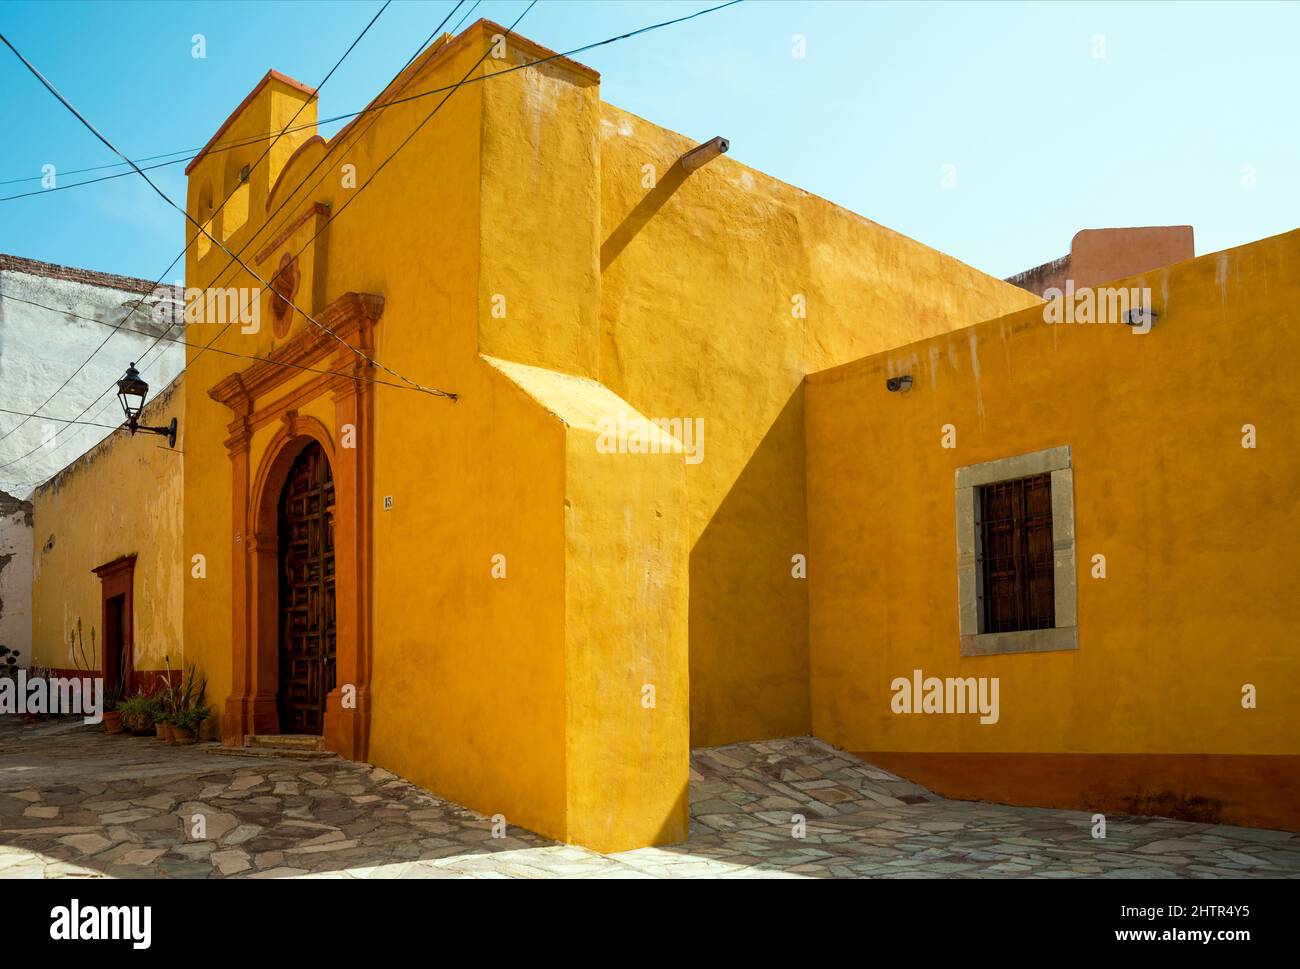 Mexique, Guanajuato, Guanajuato, bâtiment espagnol d'architecture coloniale aux couleurs jaunes Banque D'Images